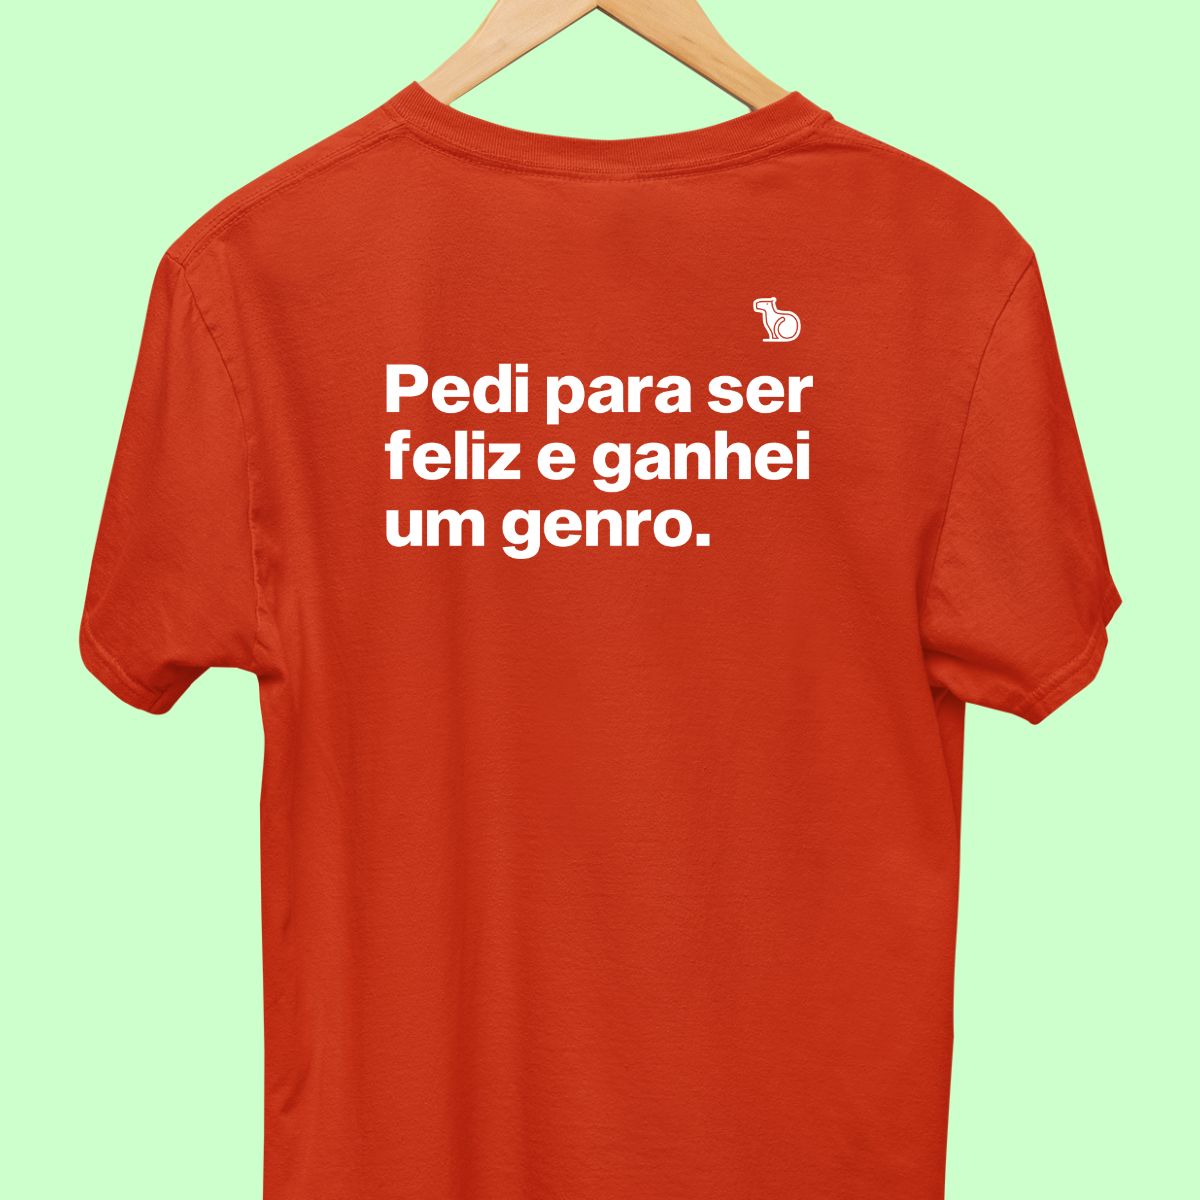 Camiseta com a frase "pedi para ser feliz e ganhei um genro." masculina vermelha.